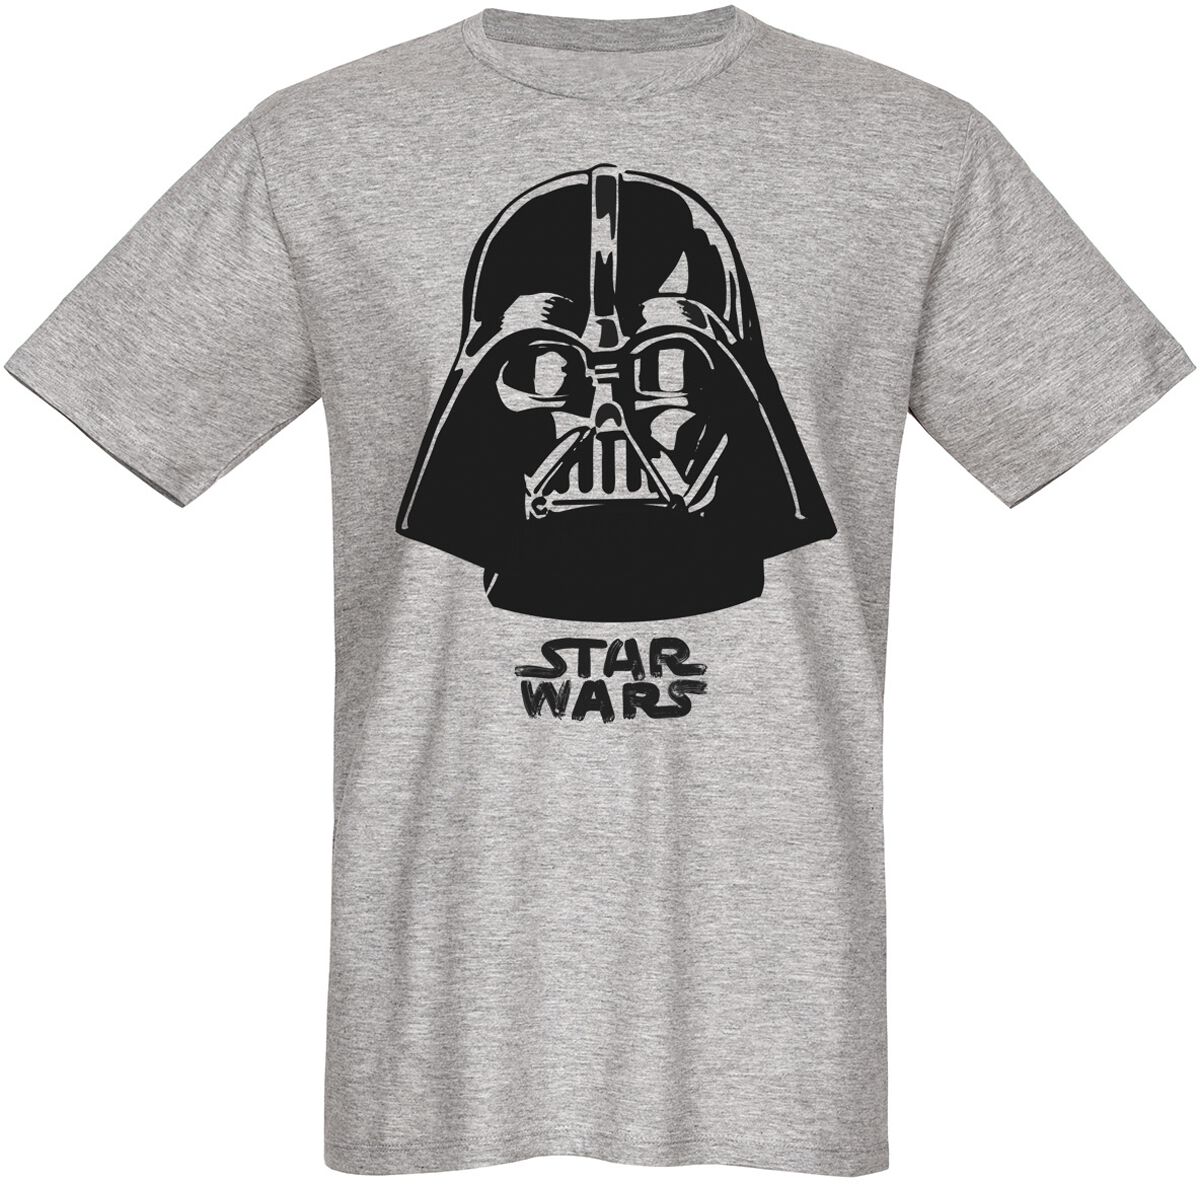 Star Wars T-Shirt - Darth Vader - The Boss - S bis 3XL - für Männer - Größe M - grau  - Lizenzierter Fanartikel